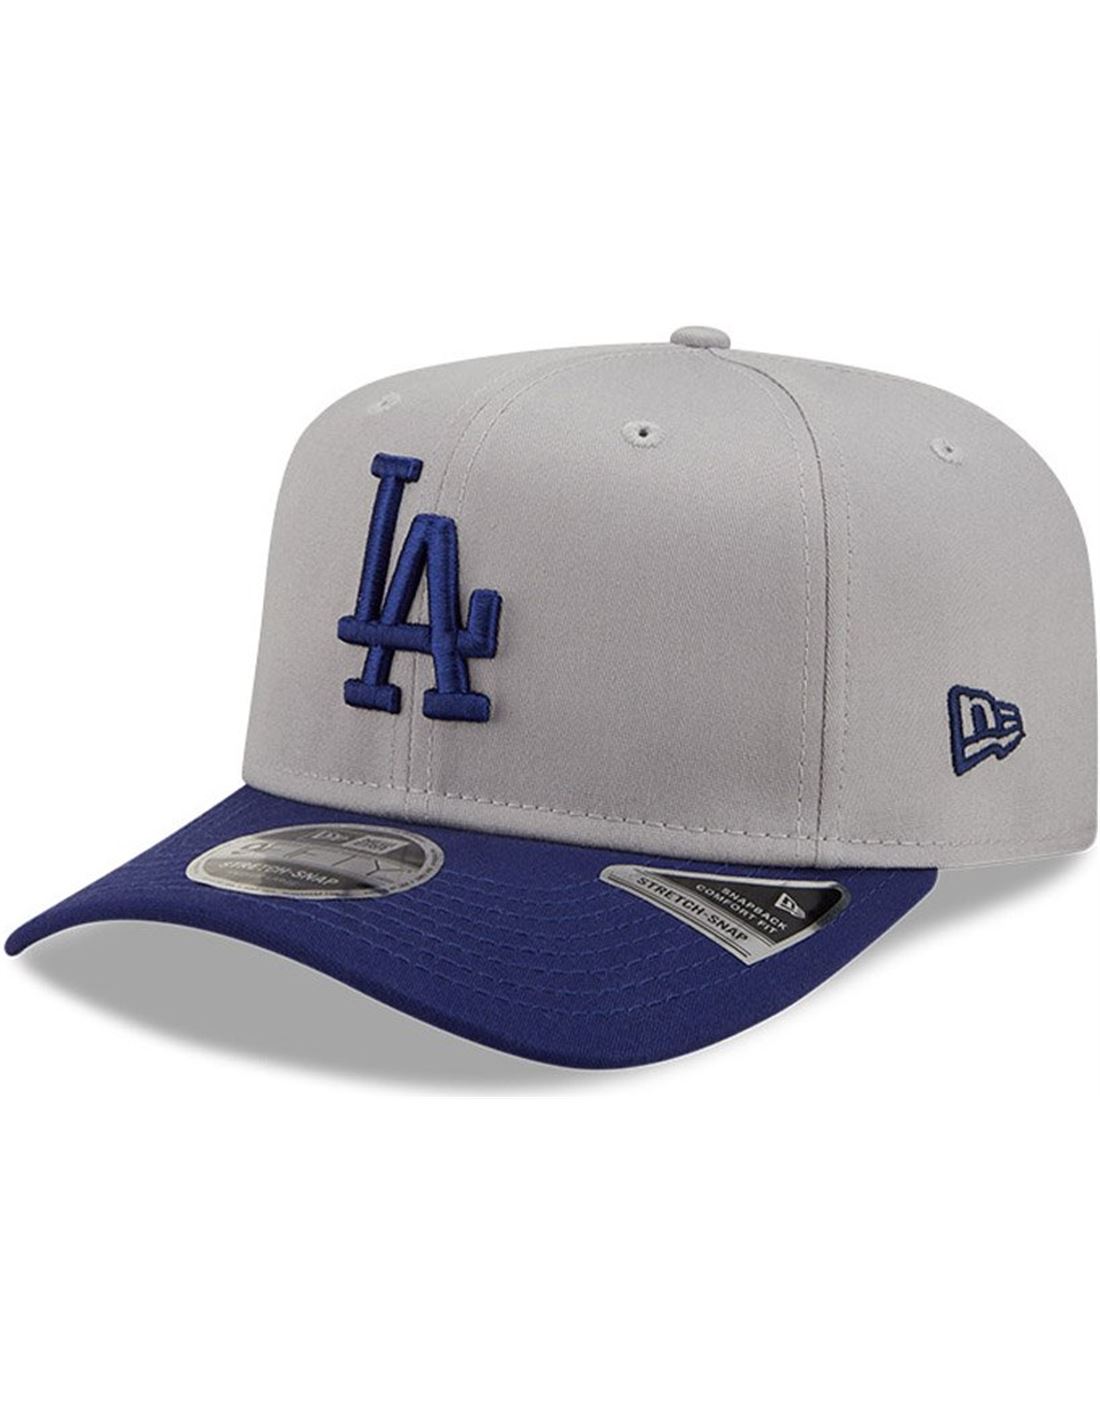 New Mens New Era Grey 9fifty La Dodgers Cotton Cap Baseball Caps 